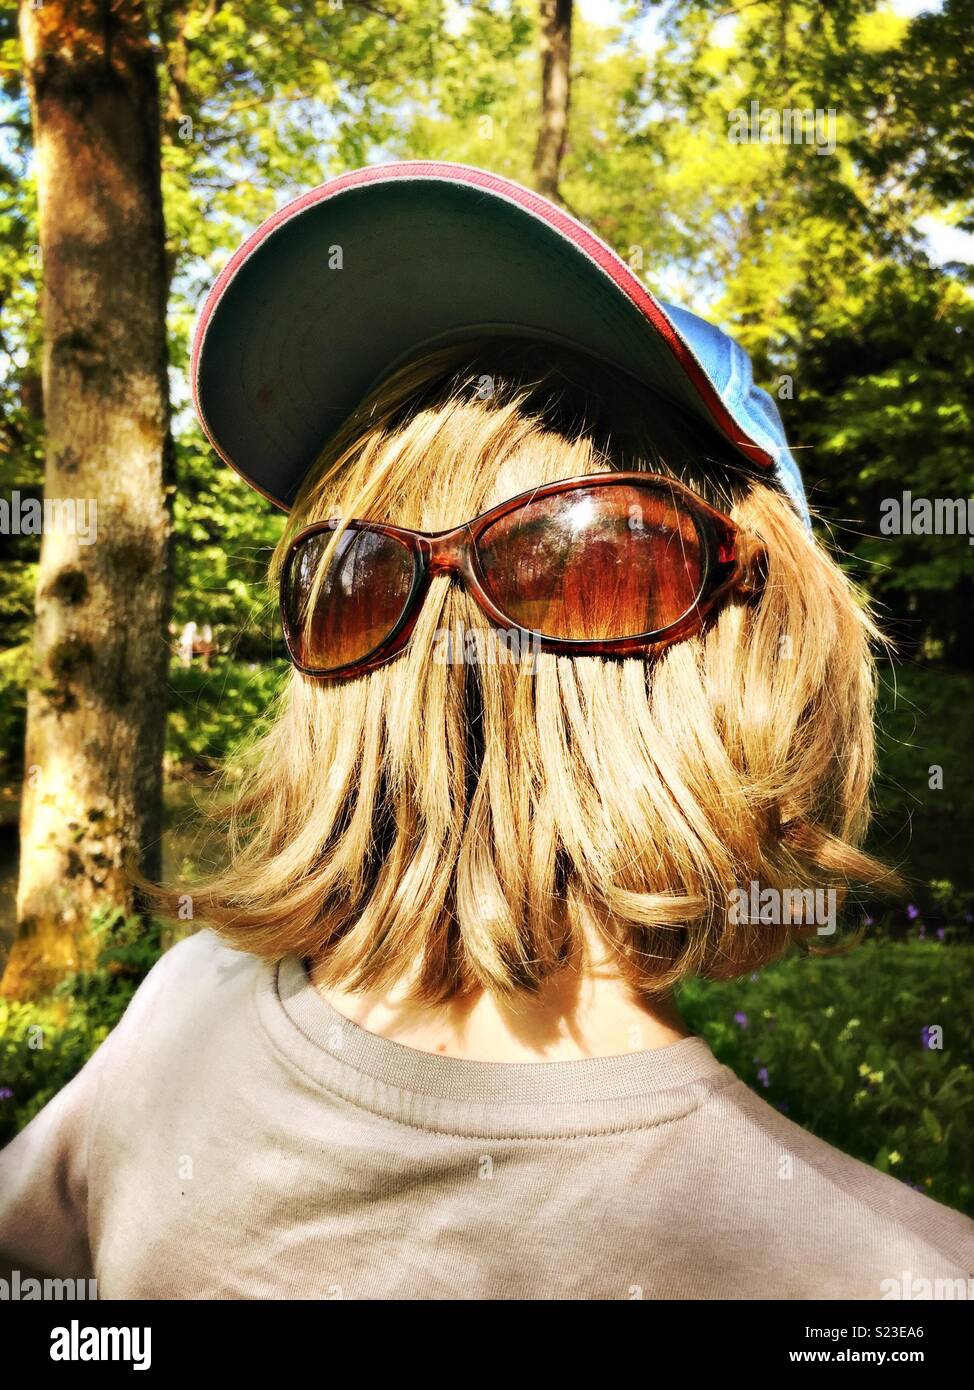 Cara peluda con gafas de sol parecido a Chewbacca Fotografía de stock -  Alamy